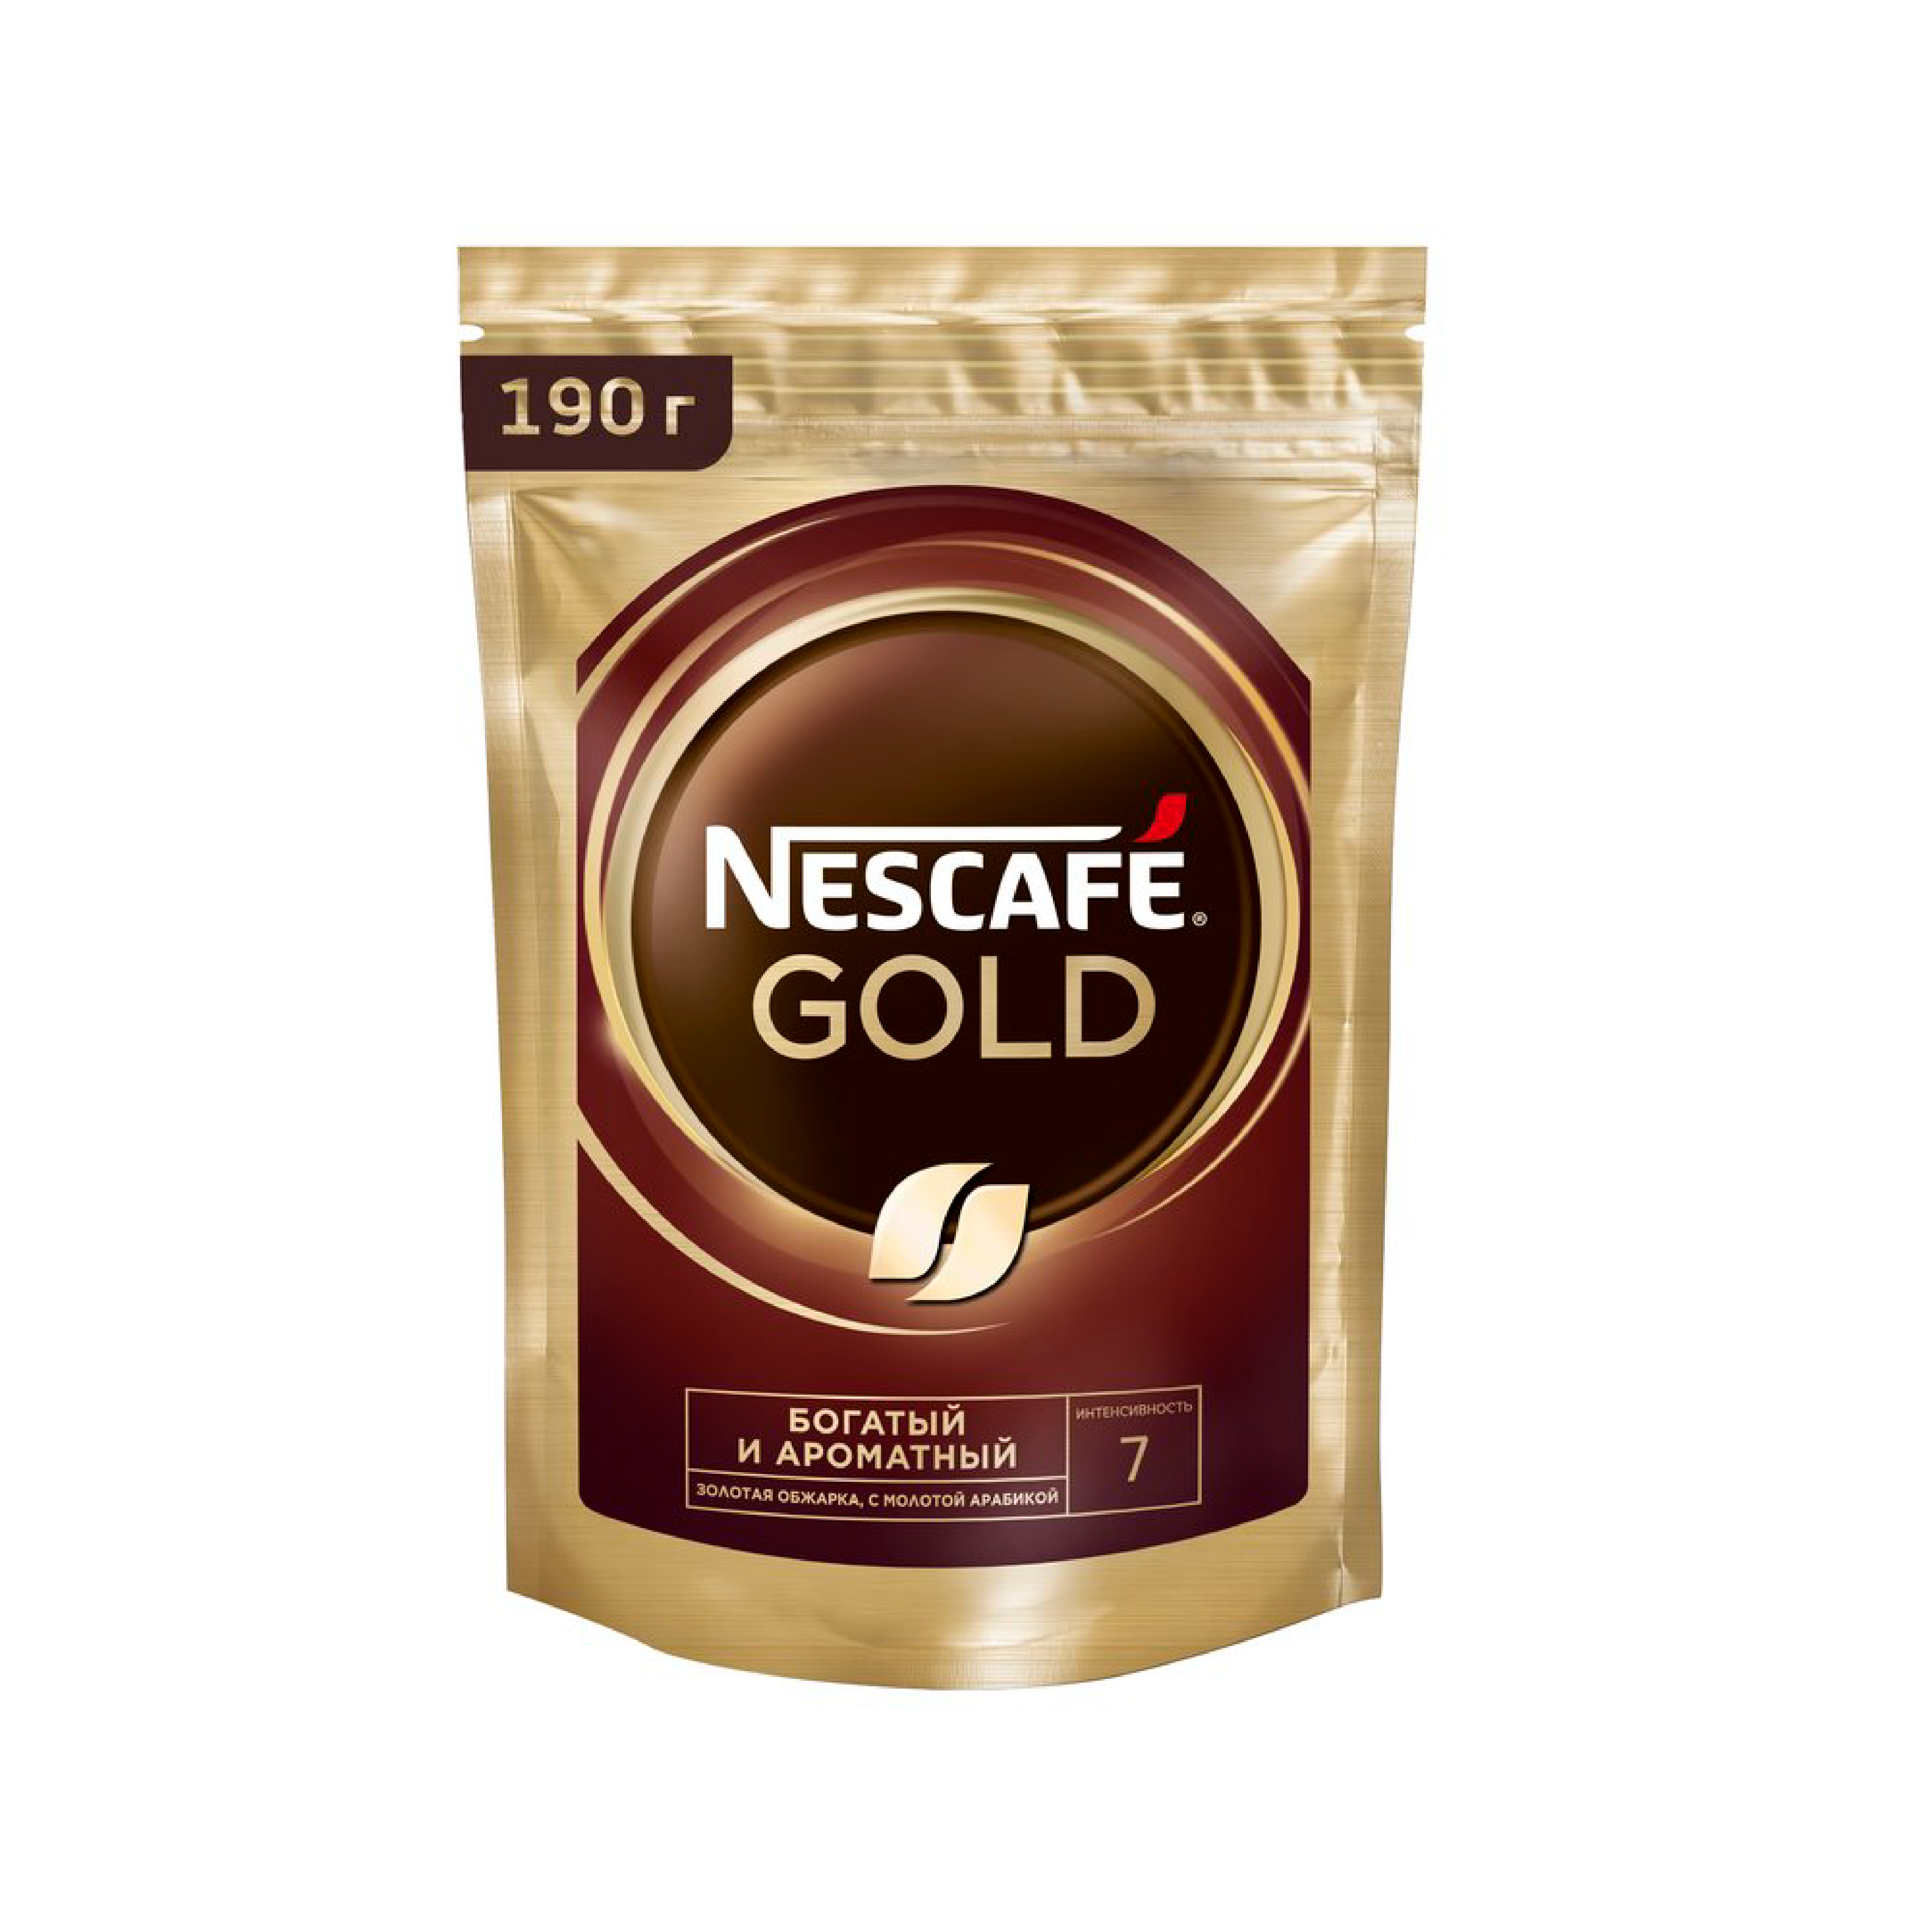 Мелющий кофе нескафе. Кофе Нескафе Голд 900 гр. Nescafe кофе Gold 900г.. Кофе Нескафе Голд 900гр м.у. Кофе растворимый Nescafe Gold 900 гр.